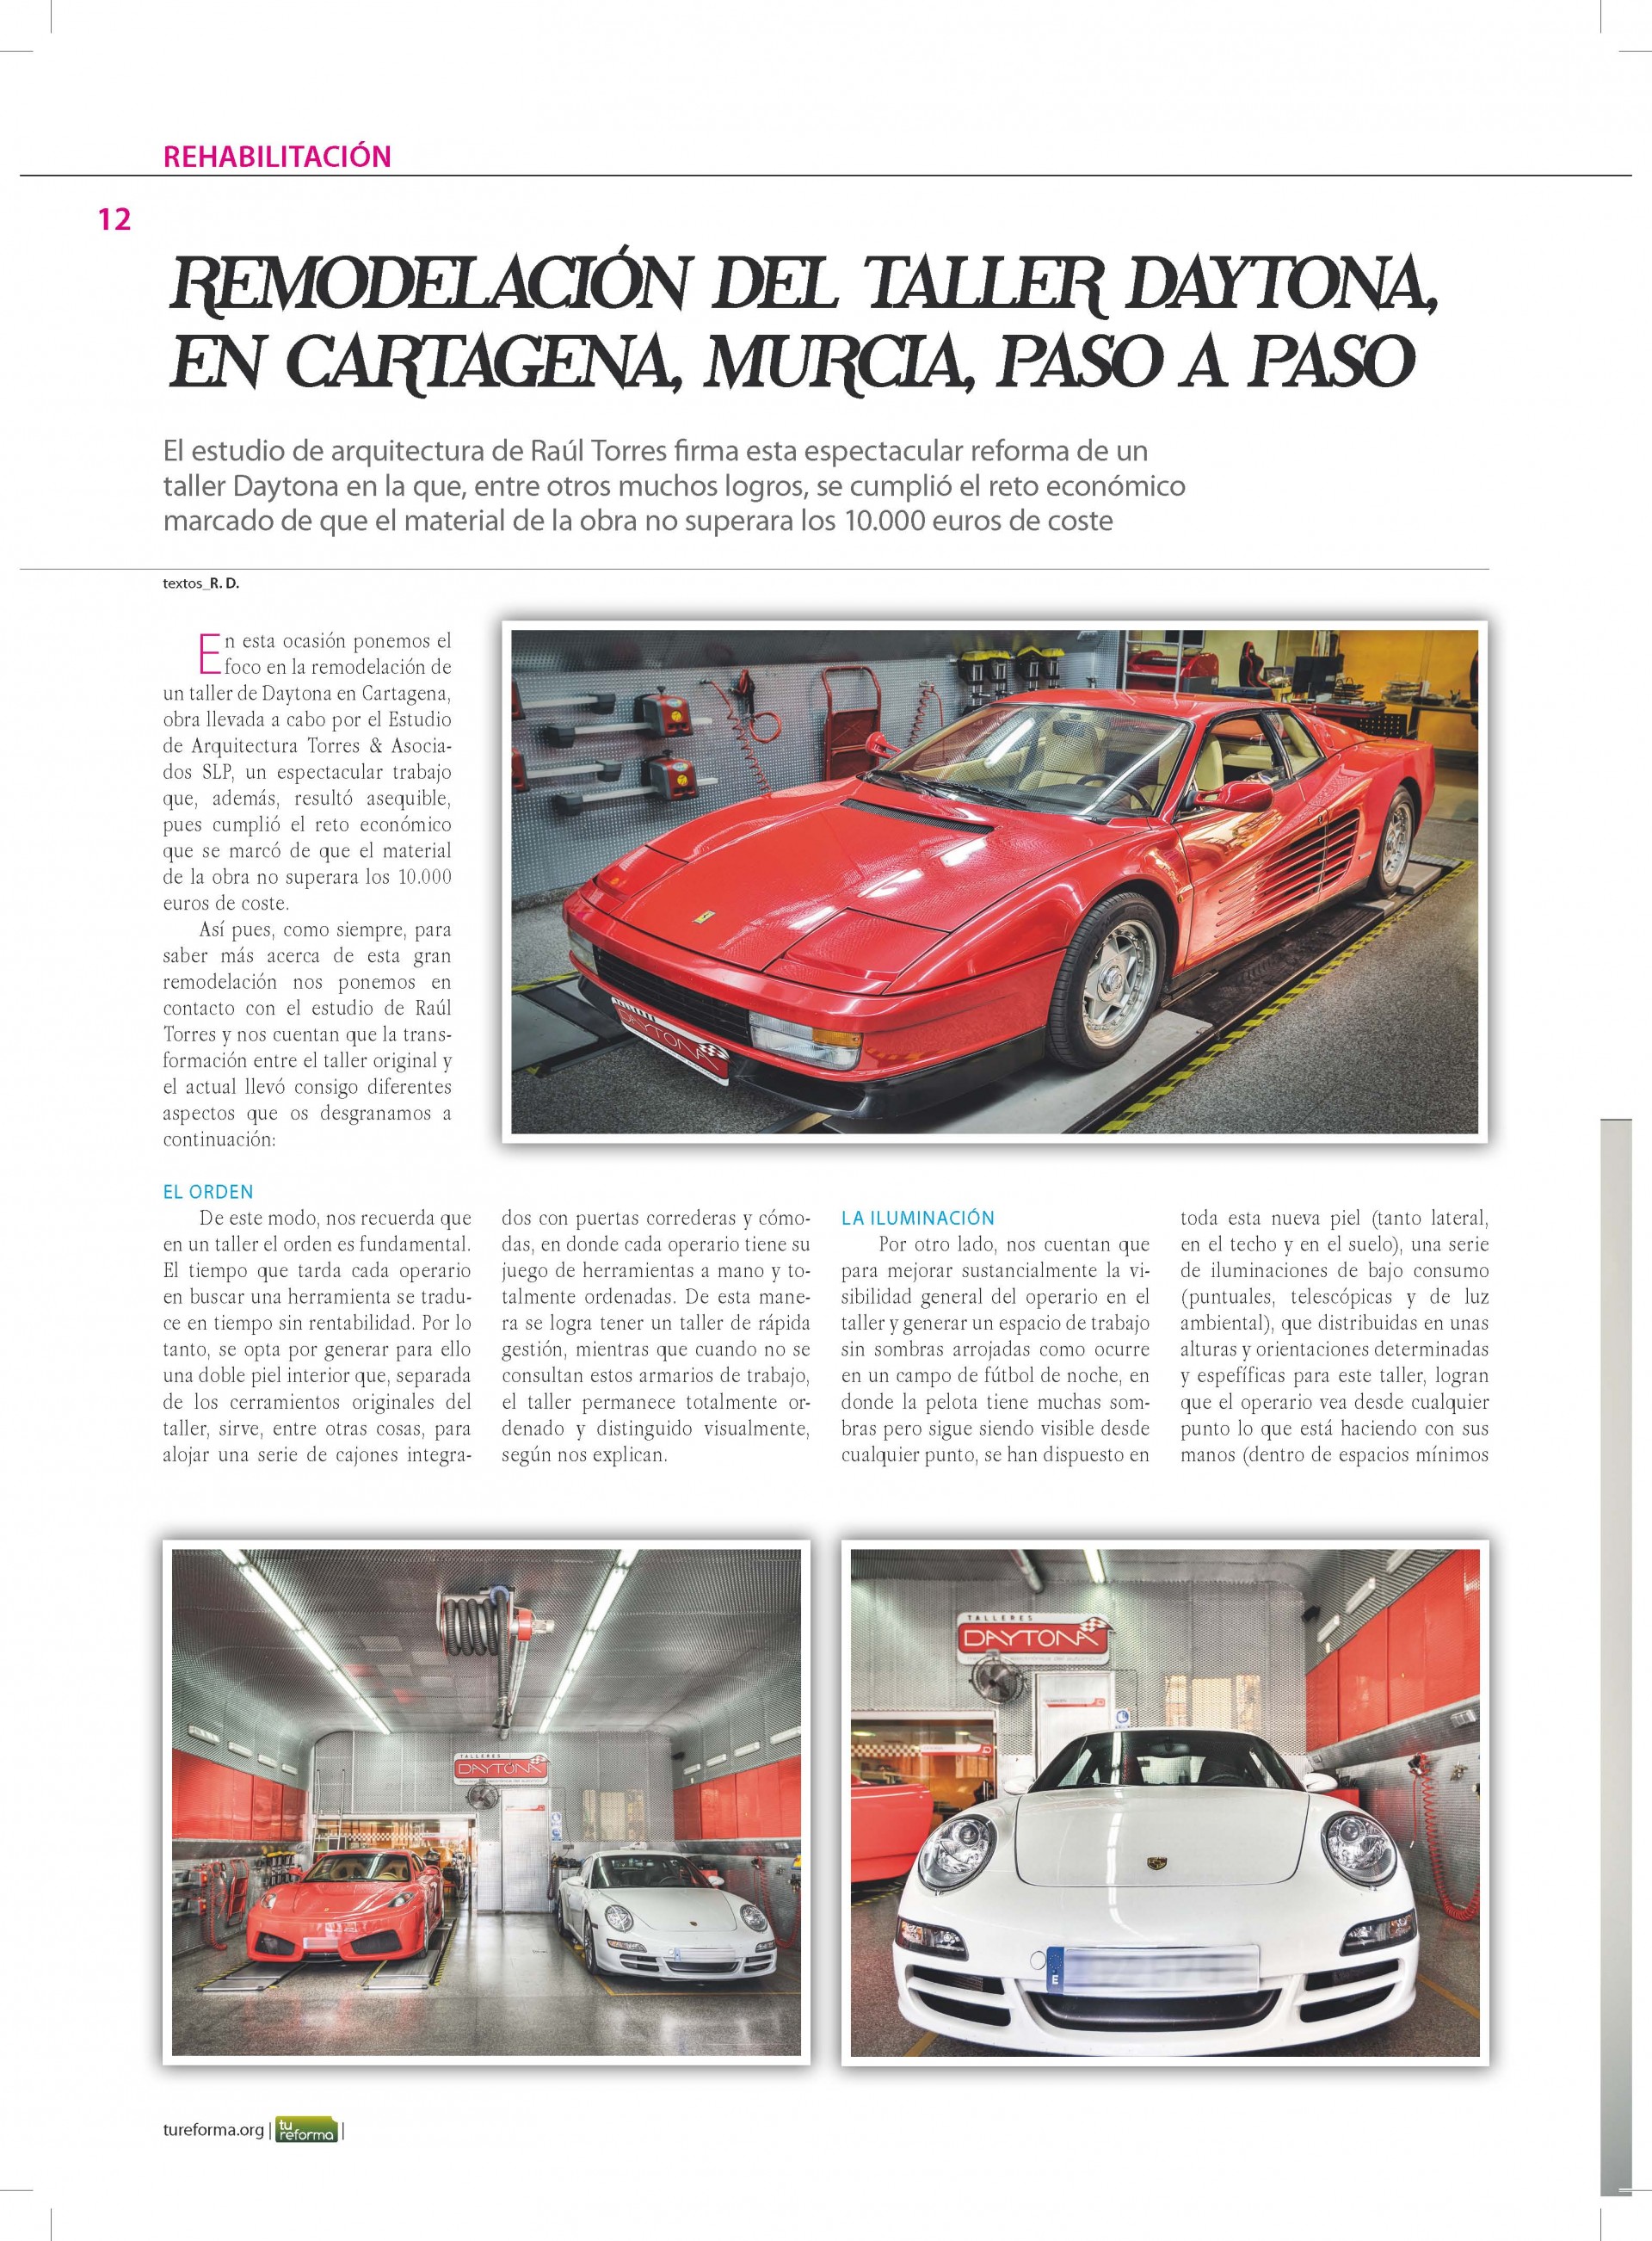 Revista Tu Reforma. Remodelación Taller Daytona